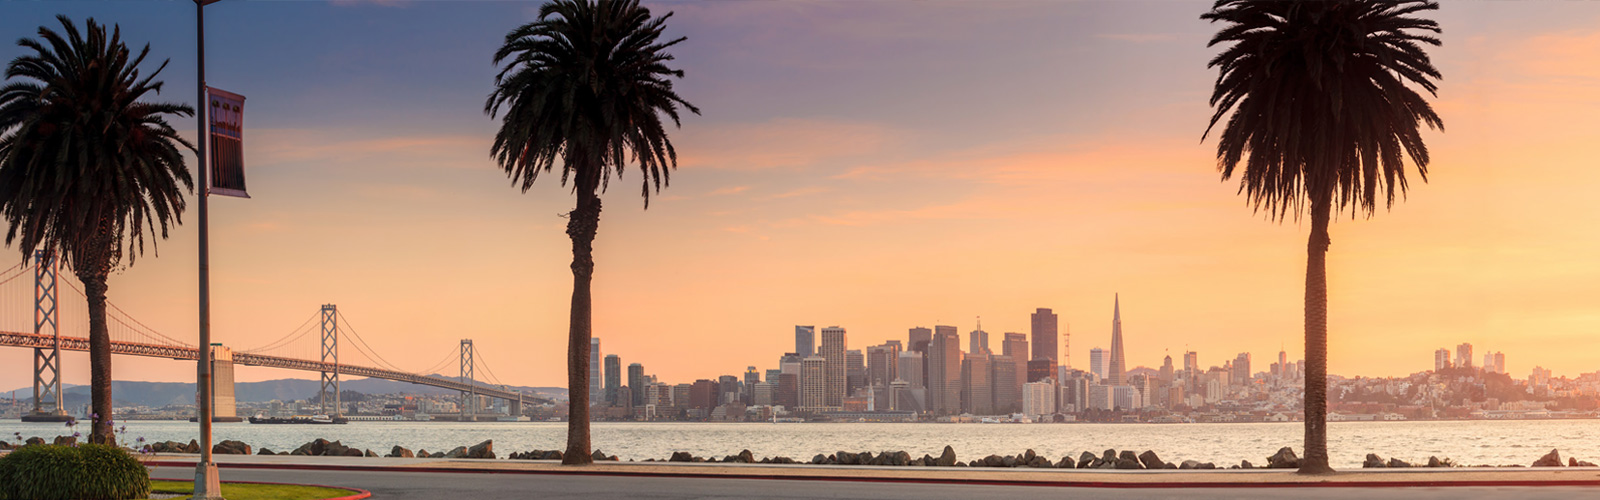 Header image of San Francisco at sunset